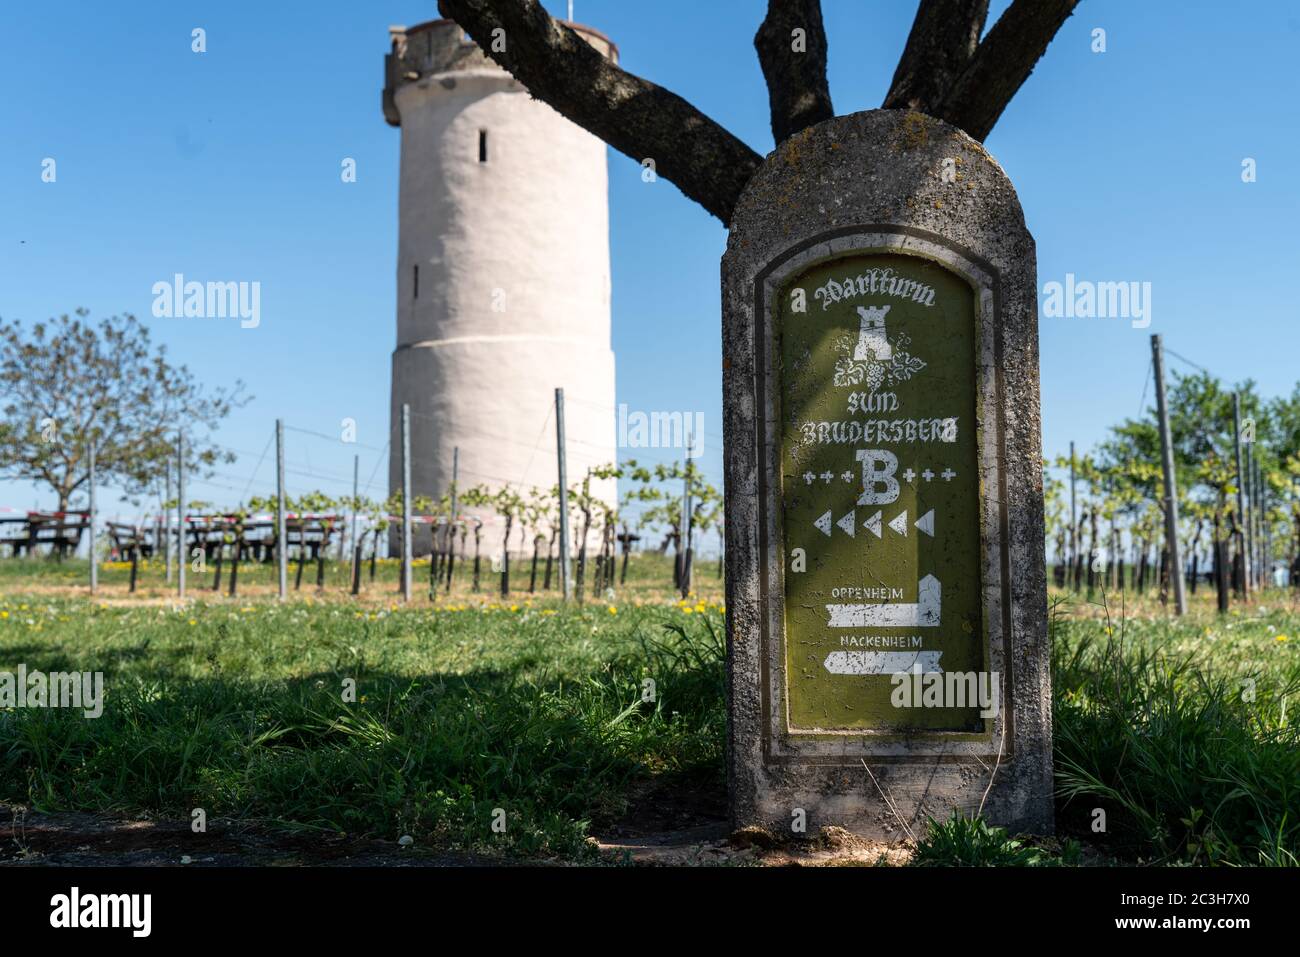 Historic watchtower in the vineyards near Nierstein Stock Photo